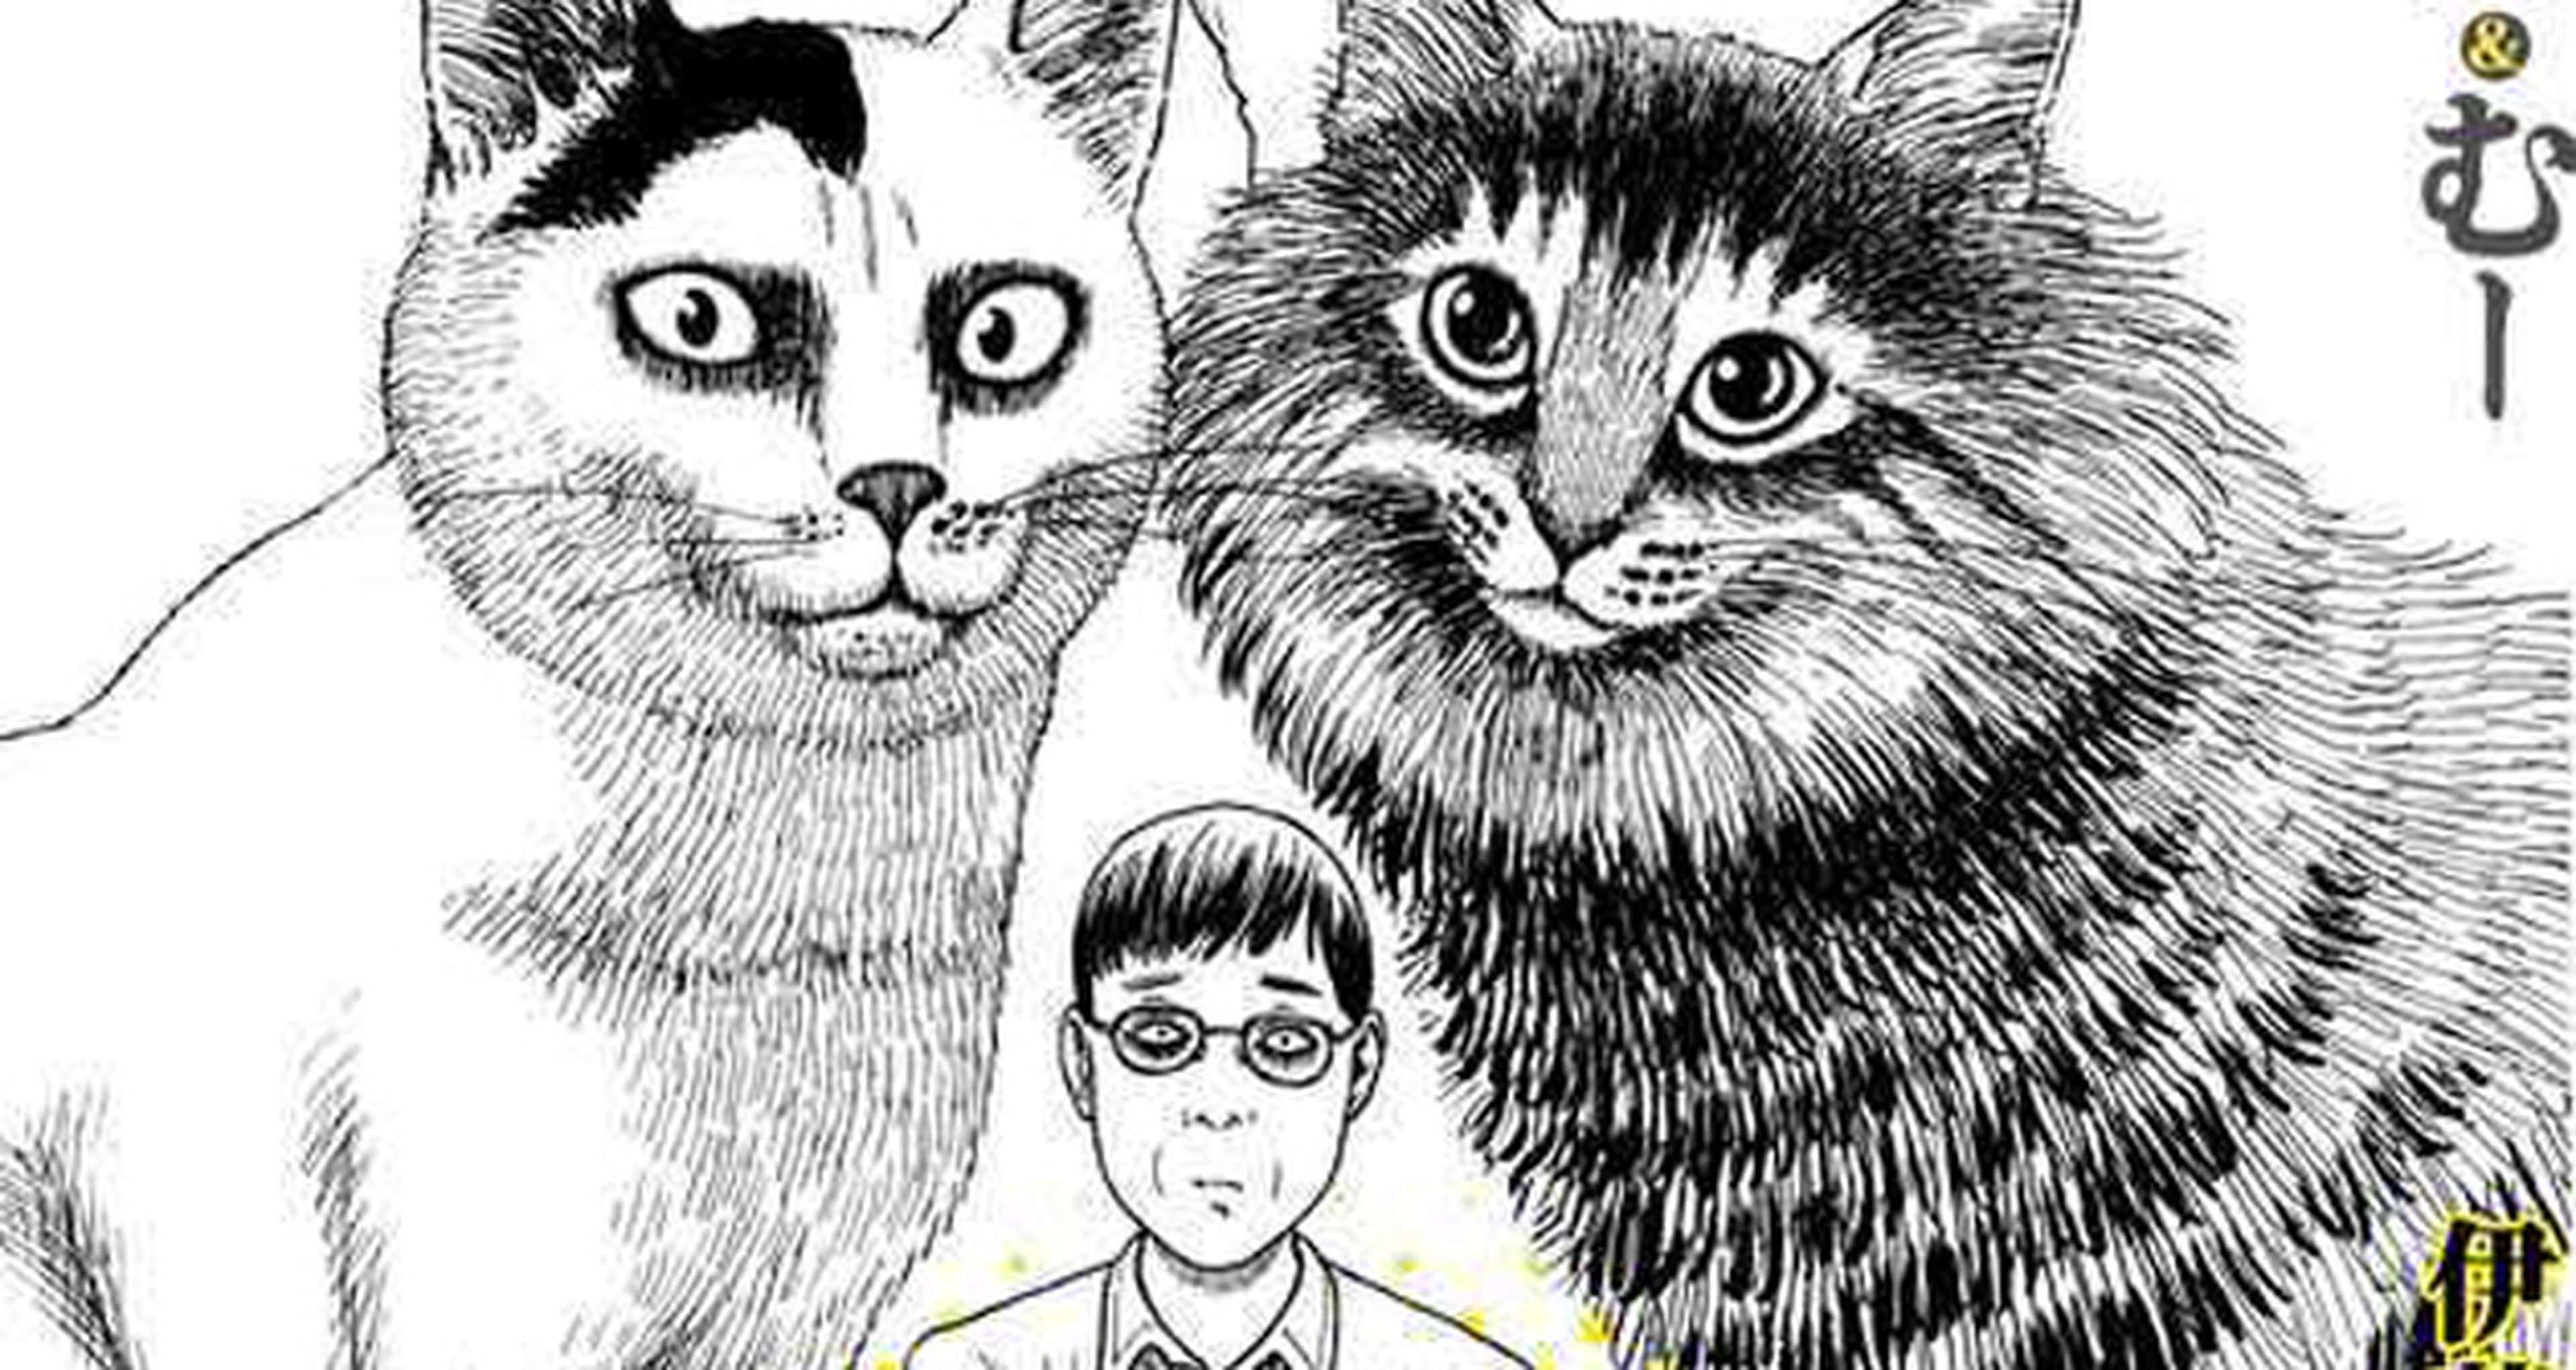 El diario gatuno de Junji Ito se publicará en verano